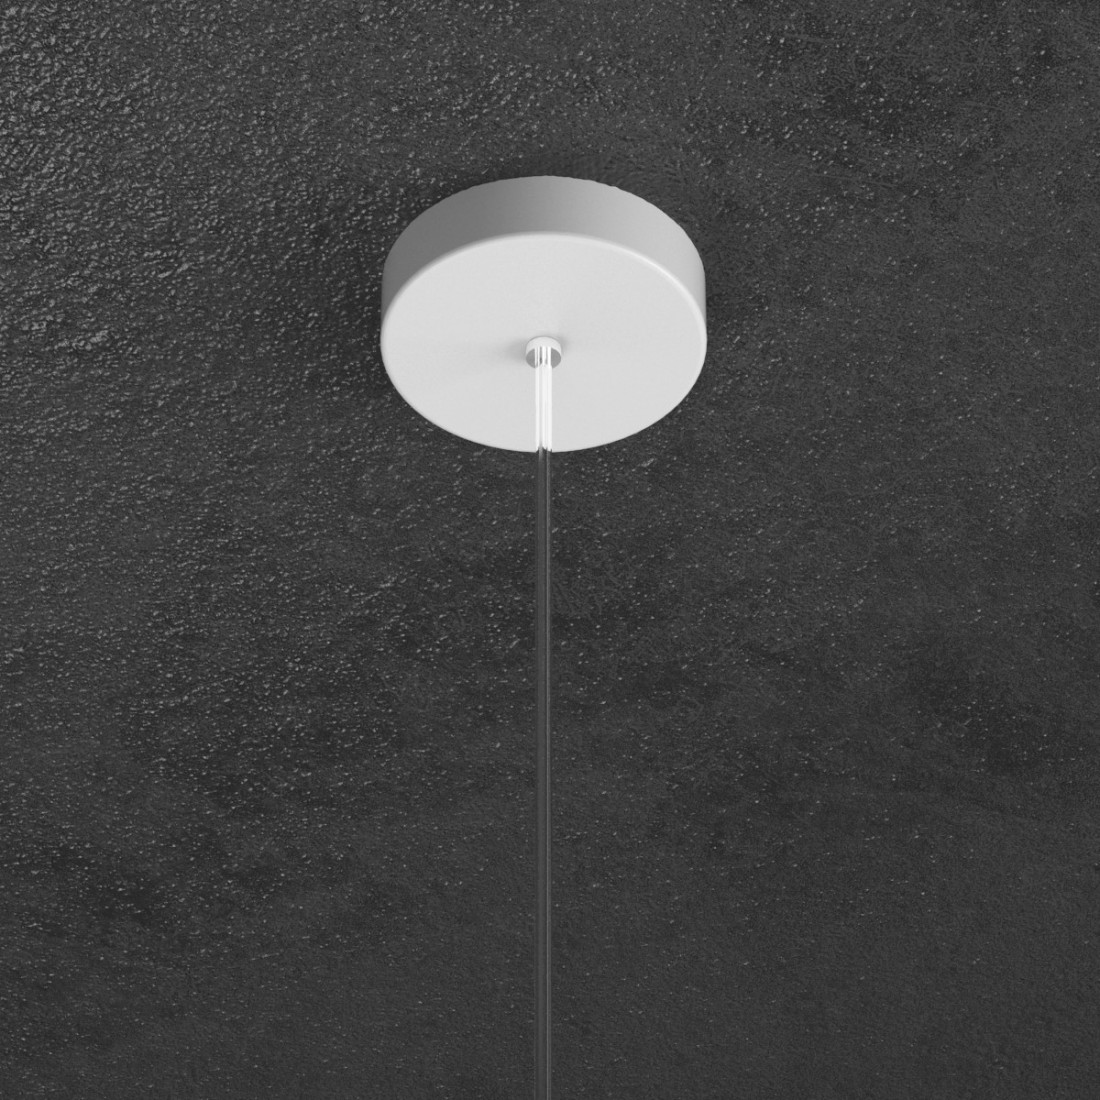 Sospensione TP-SHAPE 1143 S50 GX53 LED metallo bianco grigio sabbia lampada parete cilindro moderna interno